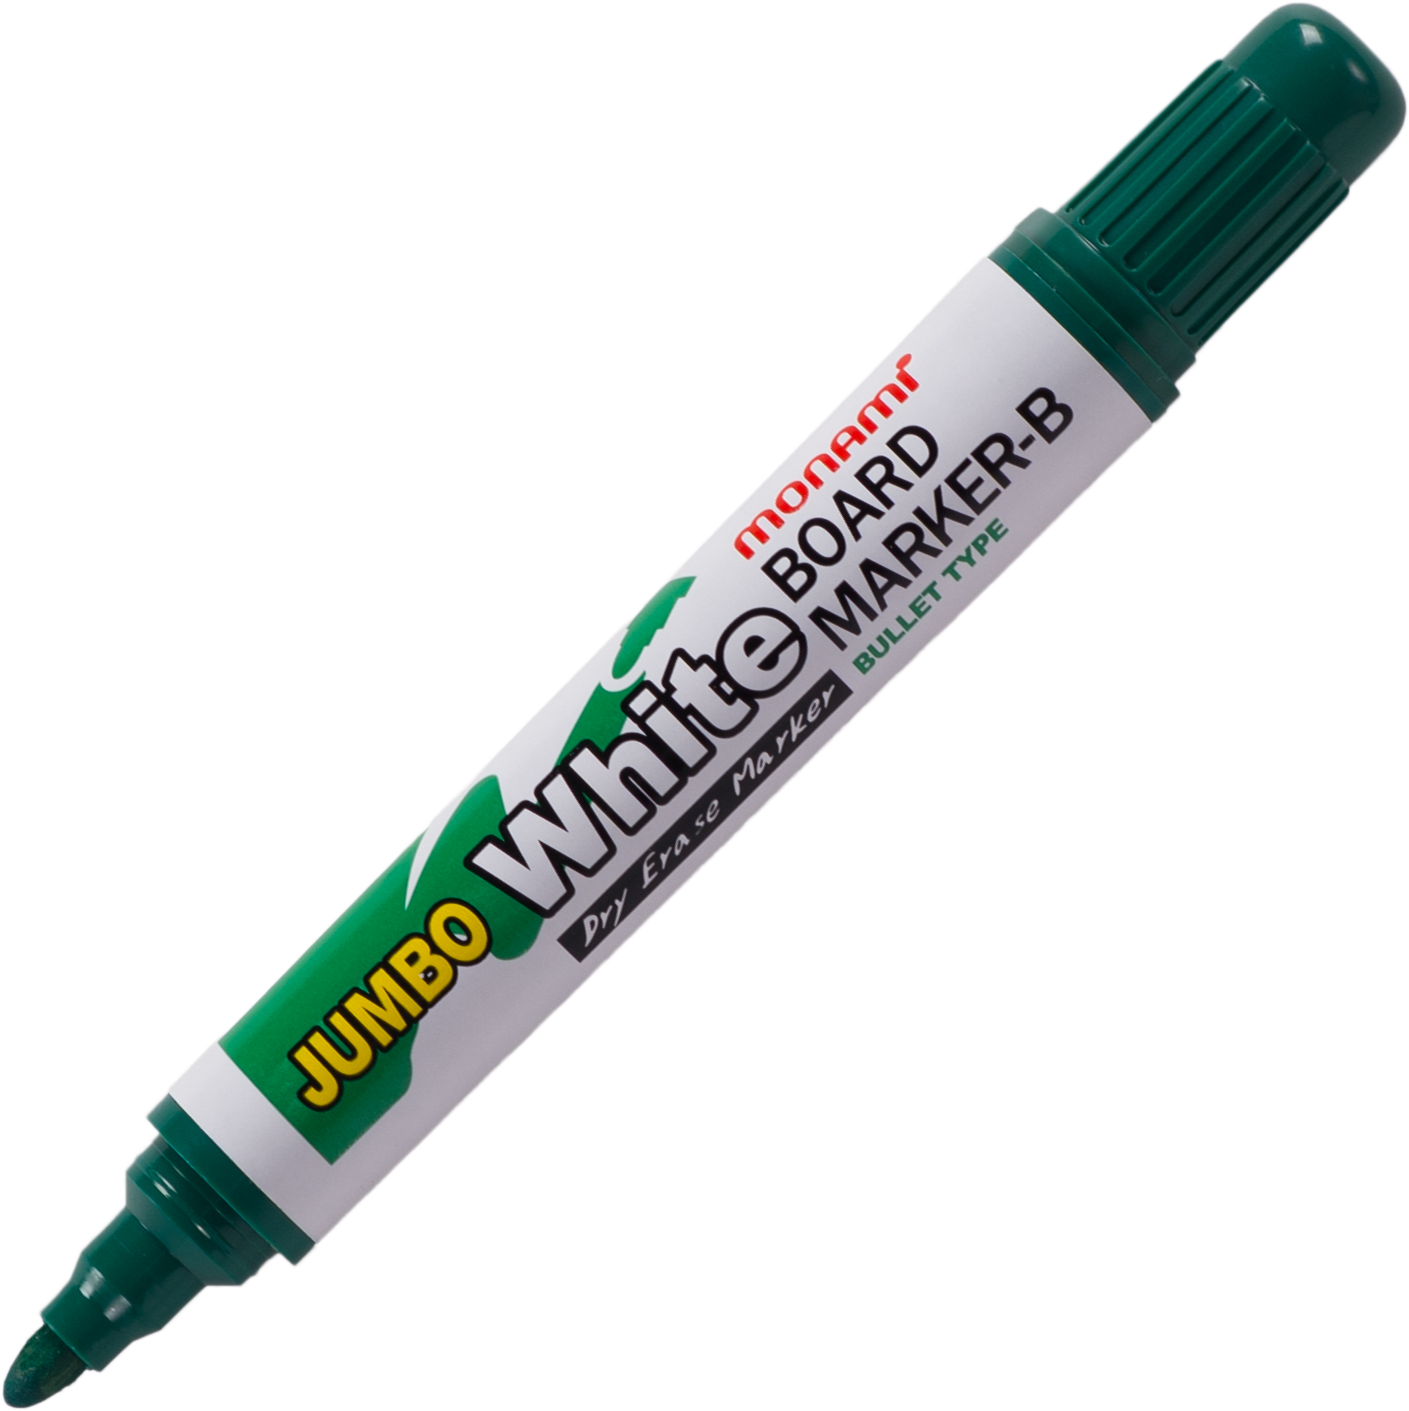 ปากกาไวท์บอร์ดโมนามิ หัวกลม รุ่นจัมโบ้ สีเขียว